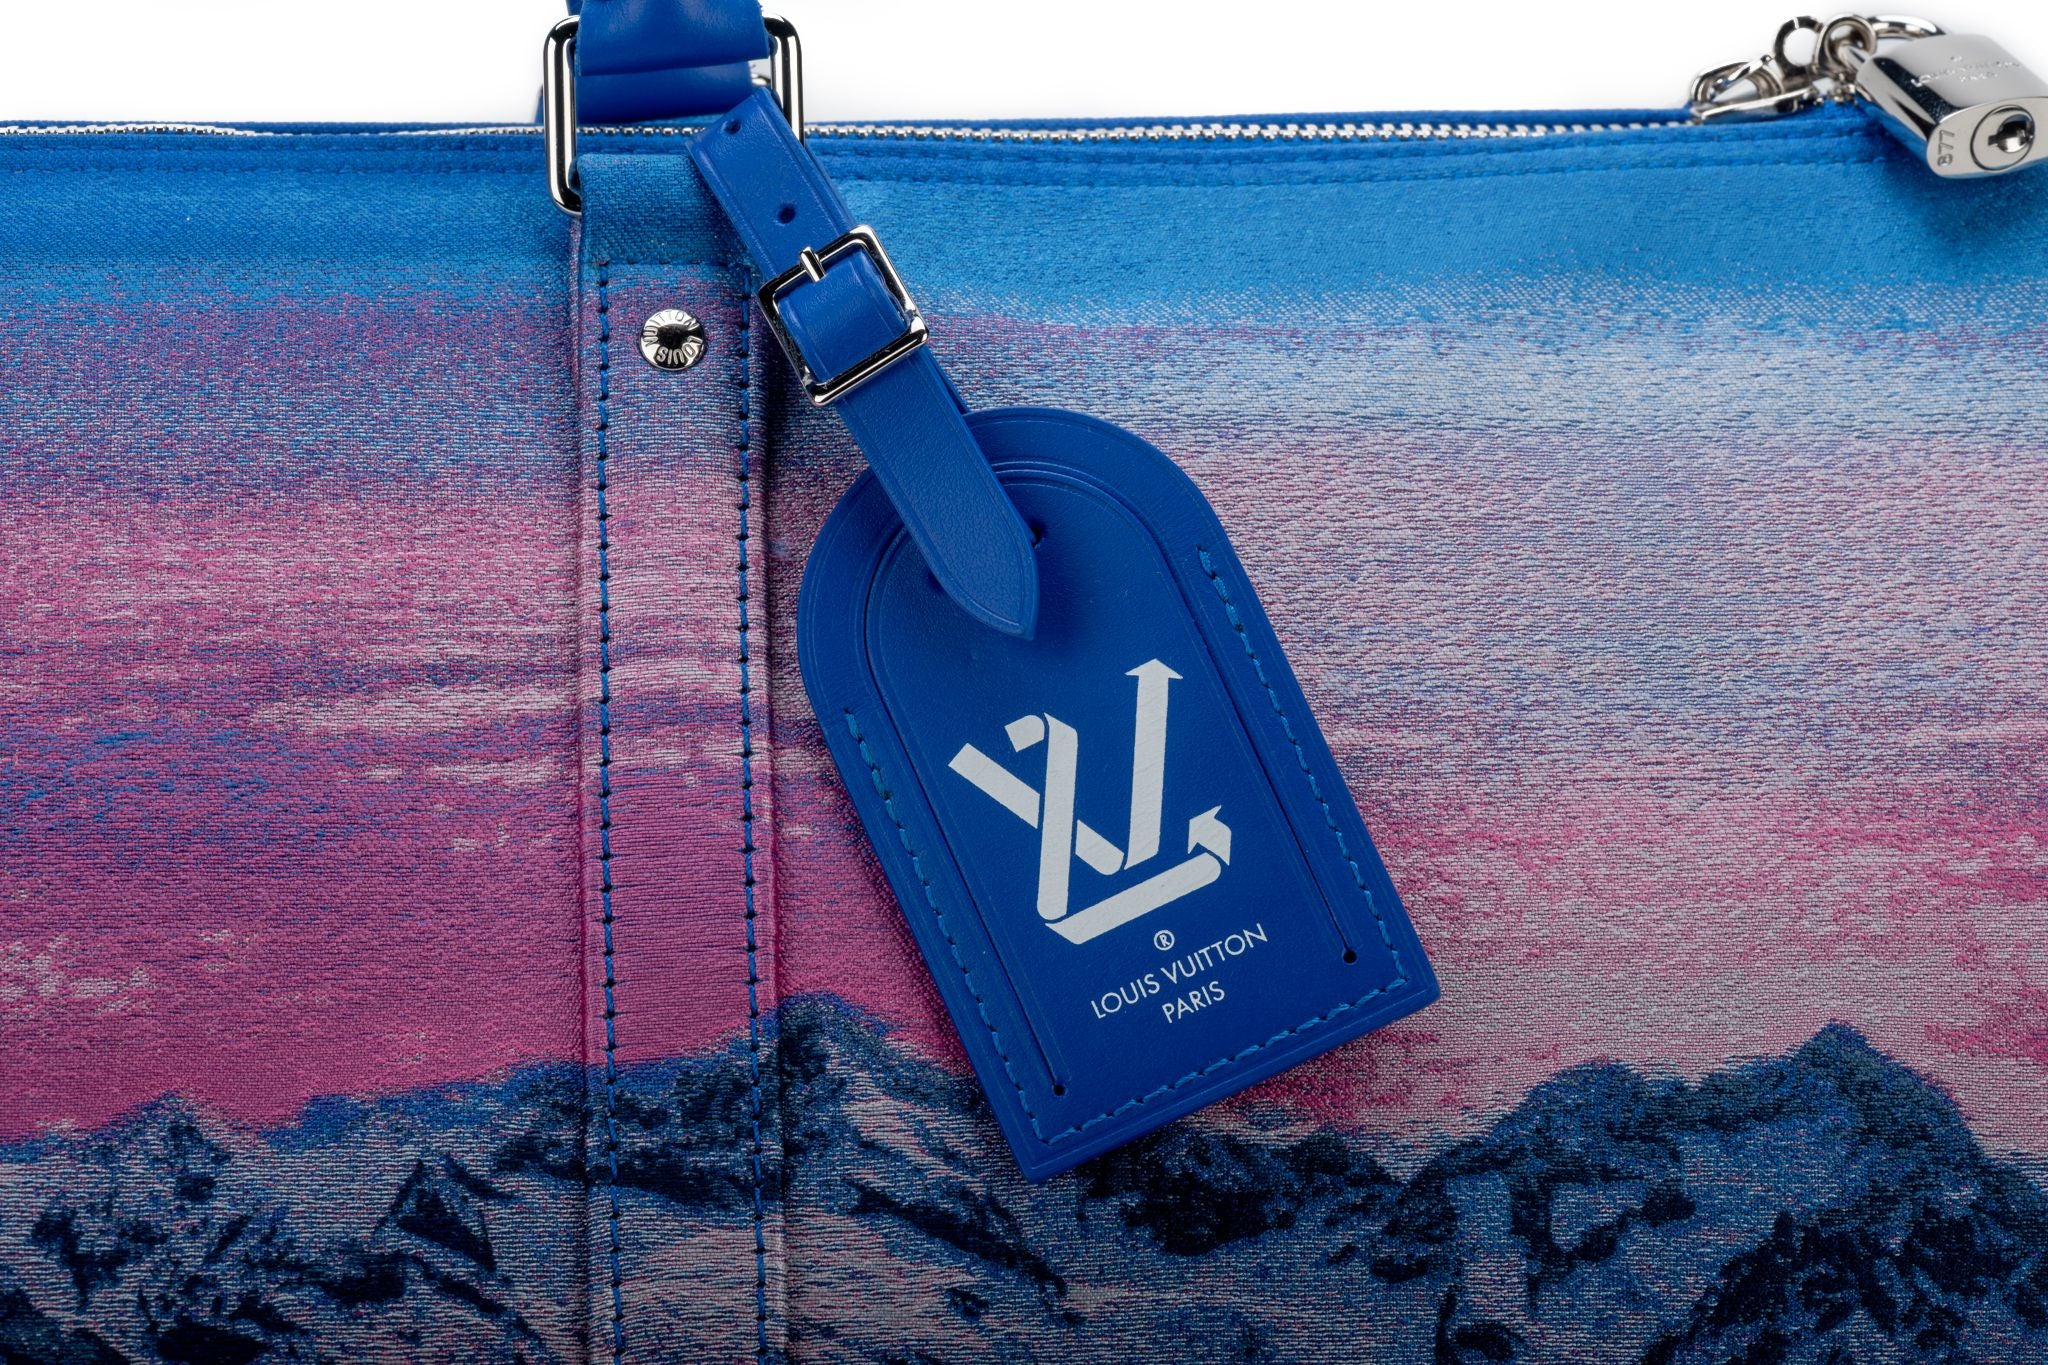 Louis Vuitton, Bags, Louis Vuitton Virgil Abloh Fw9 Rainbow Runway Keepall  Duffle Travel Bag